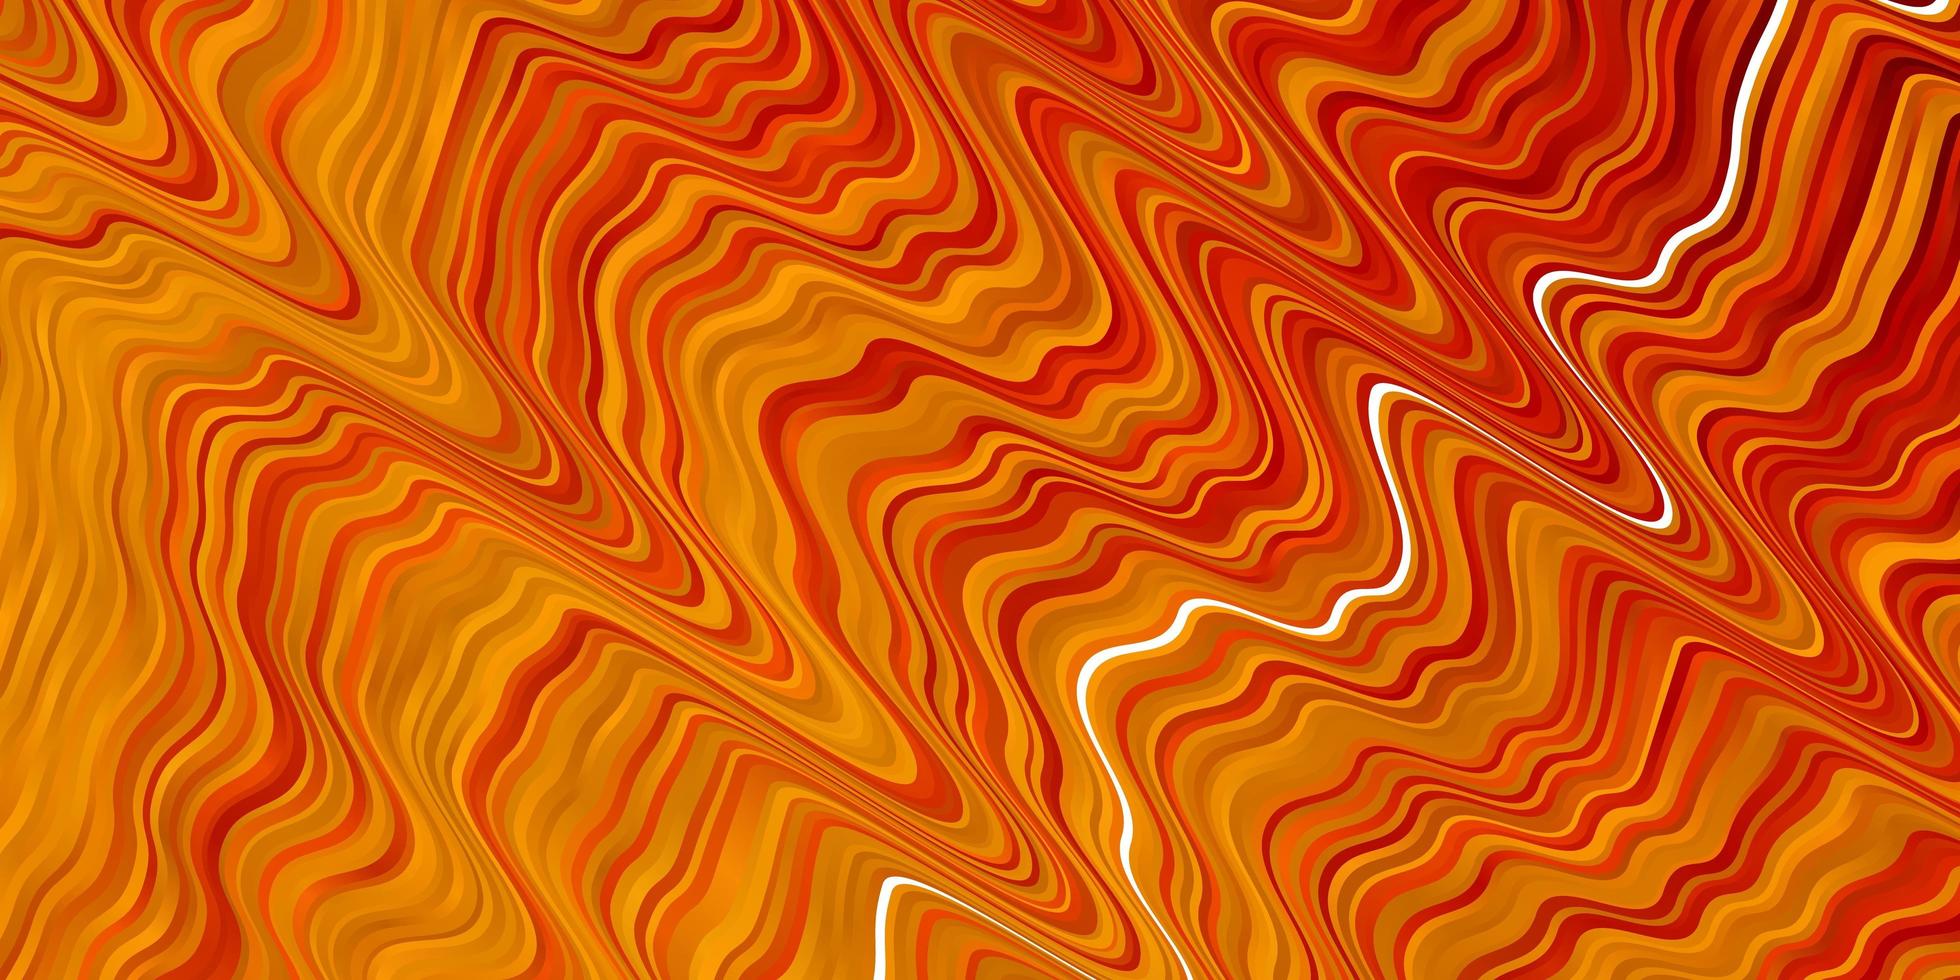 textura de vetor laranja clara com linhas irônicas.